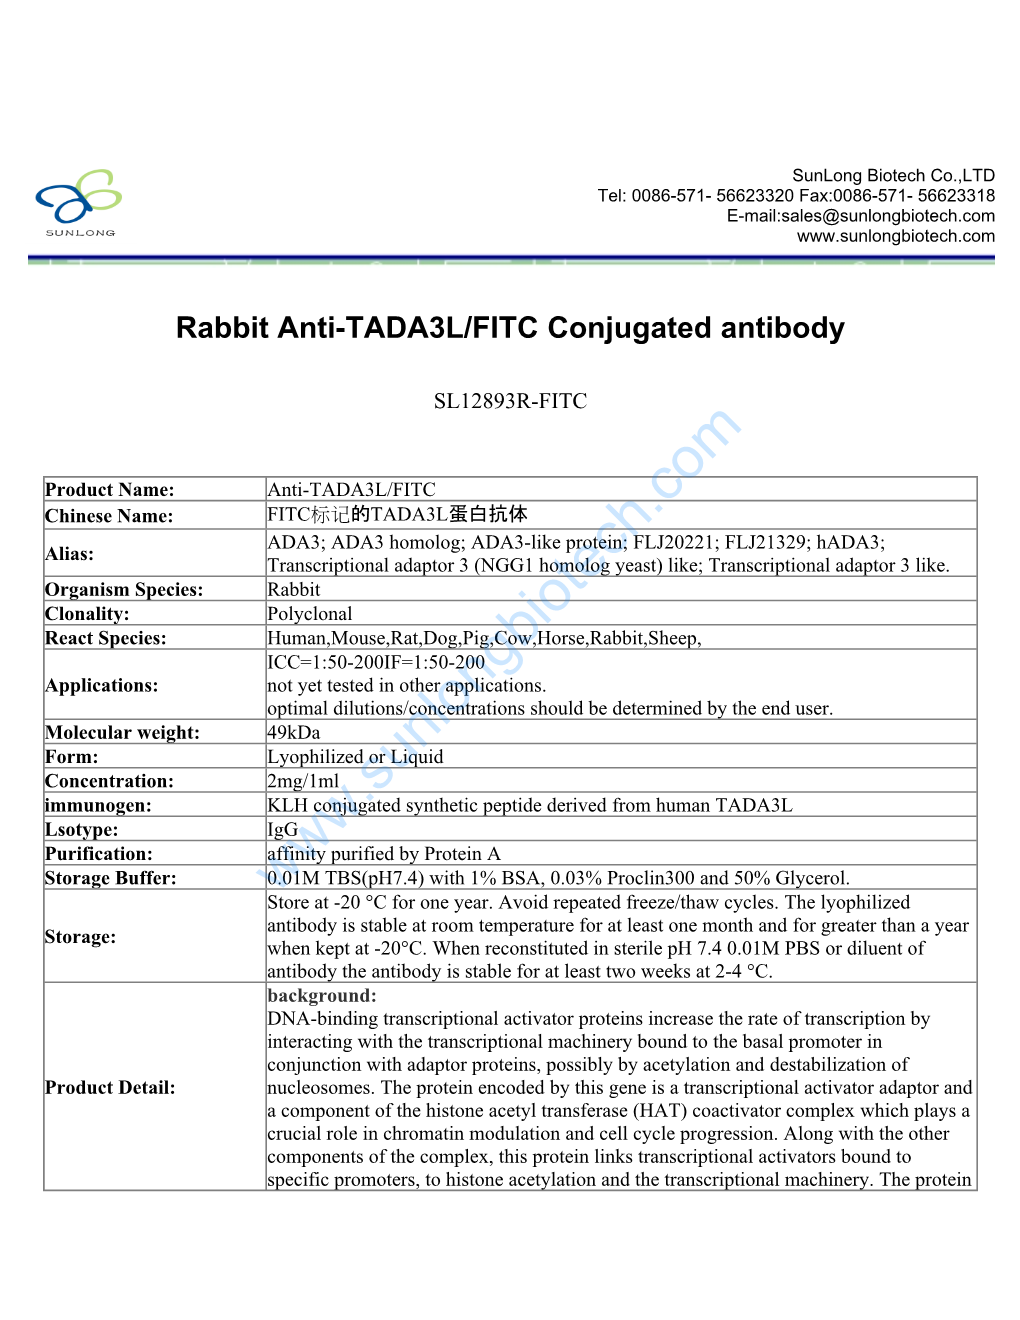 Rabbit Anti-TADA3L/FITC Conjugated Antibody-SL12893R-FITC